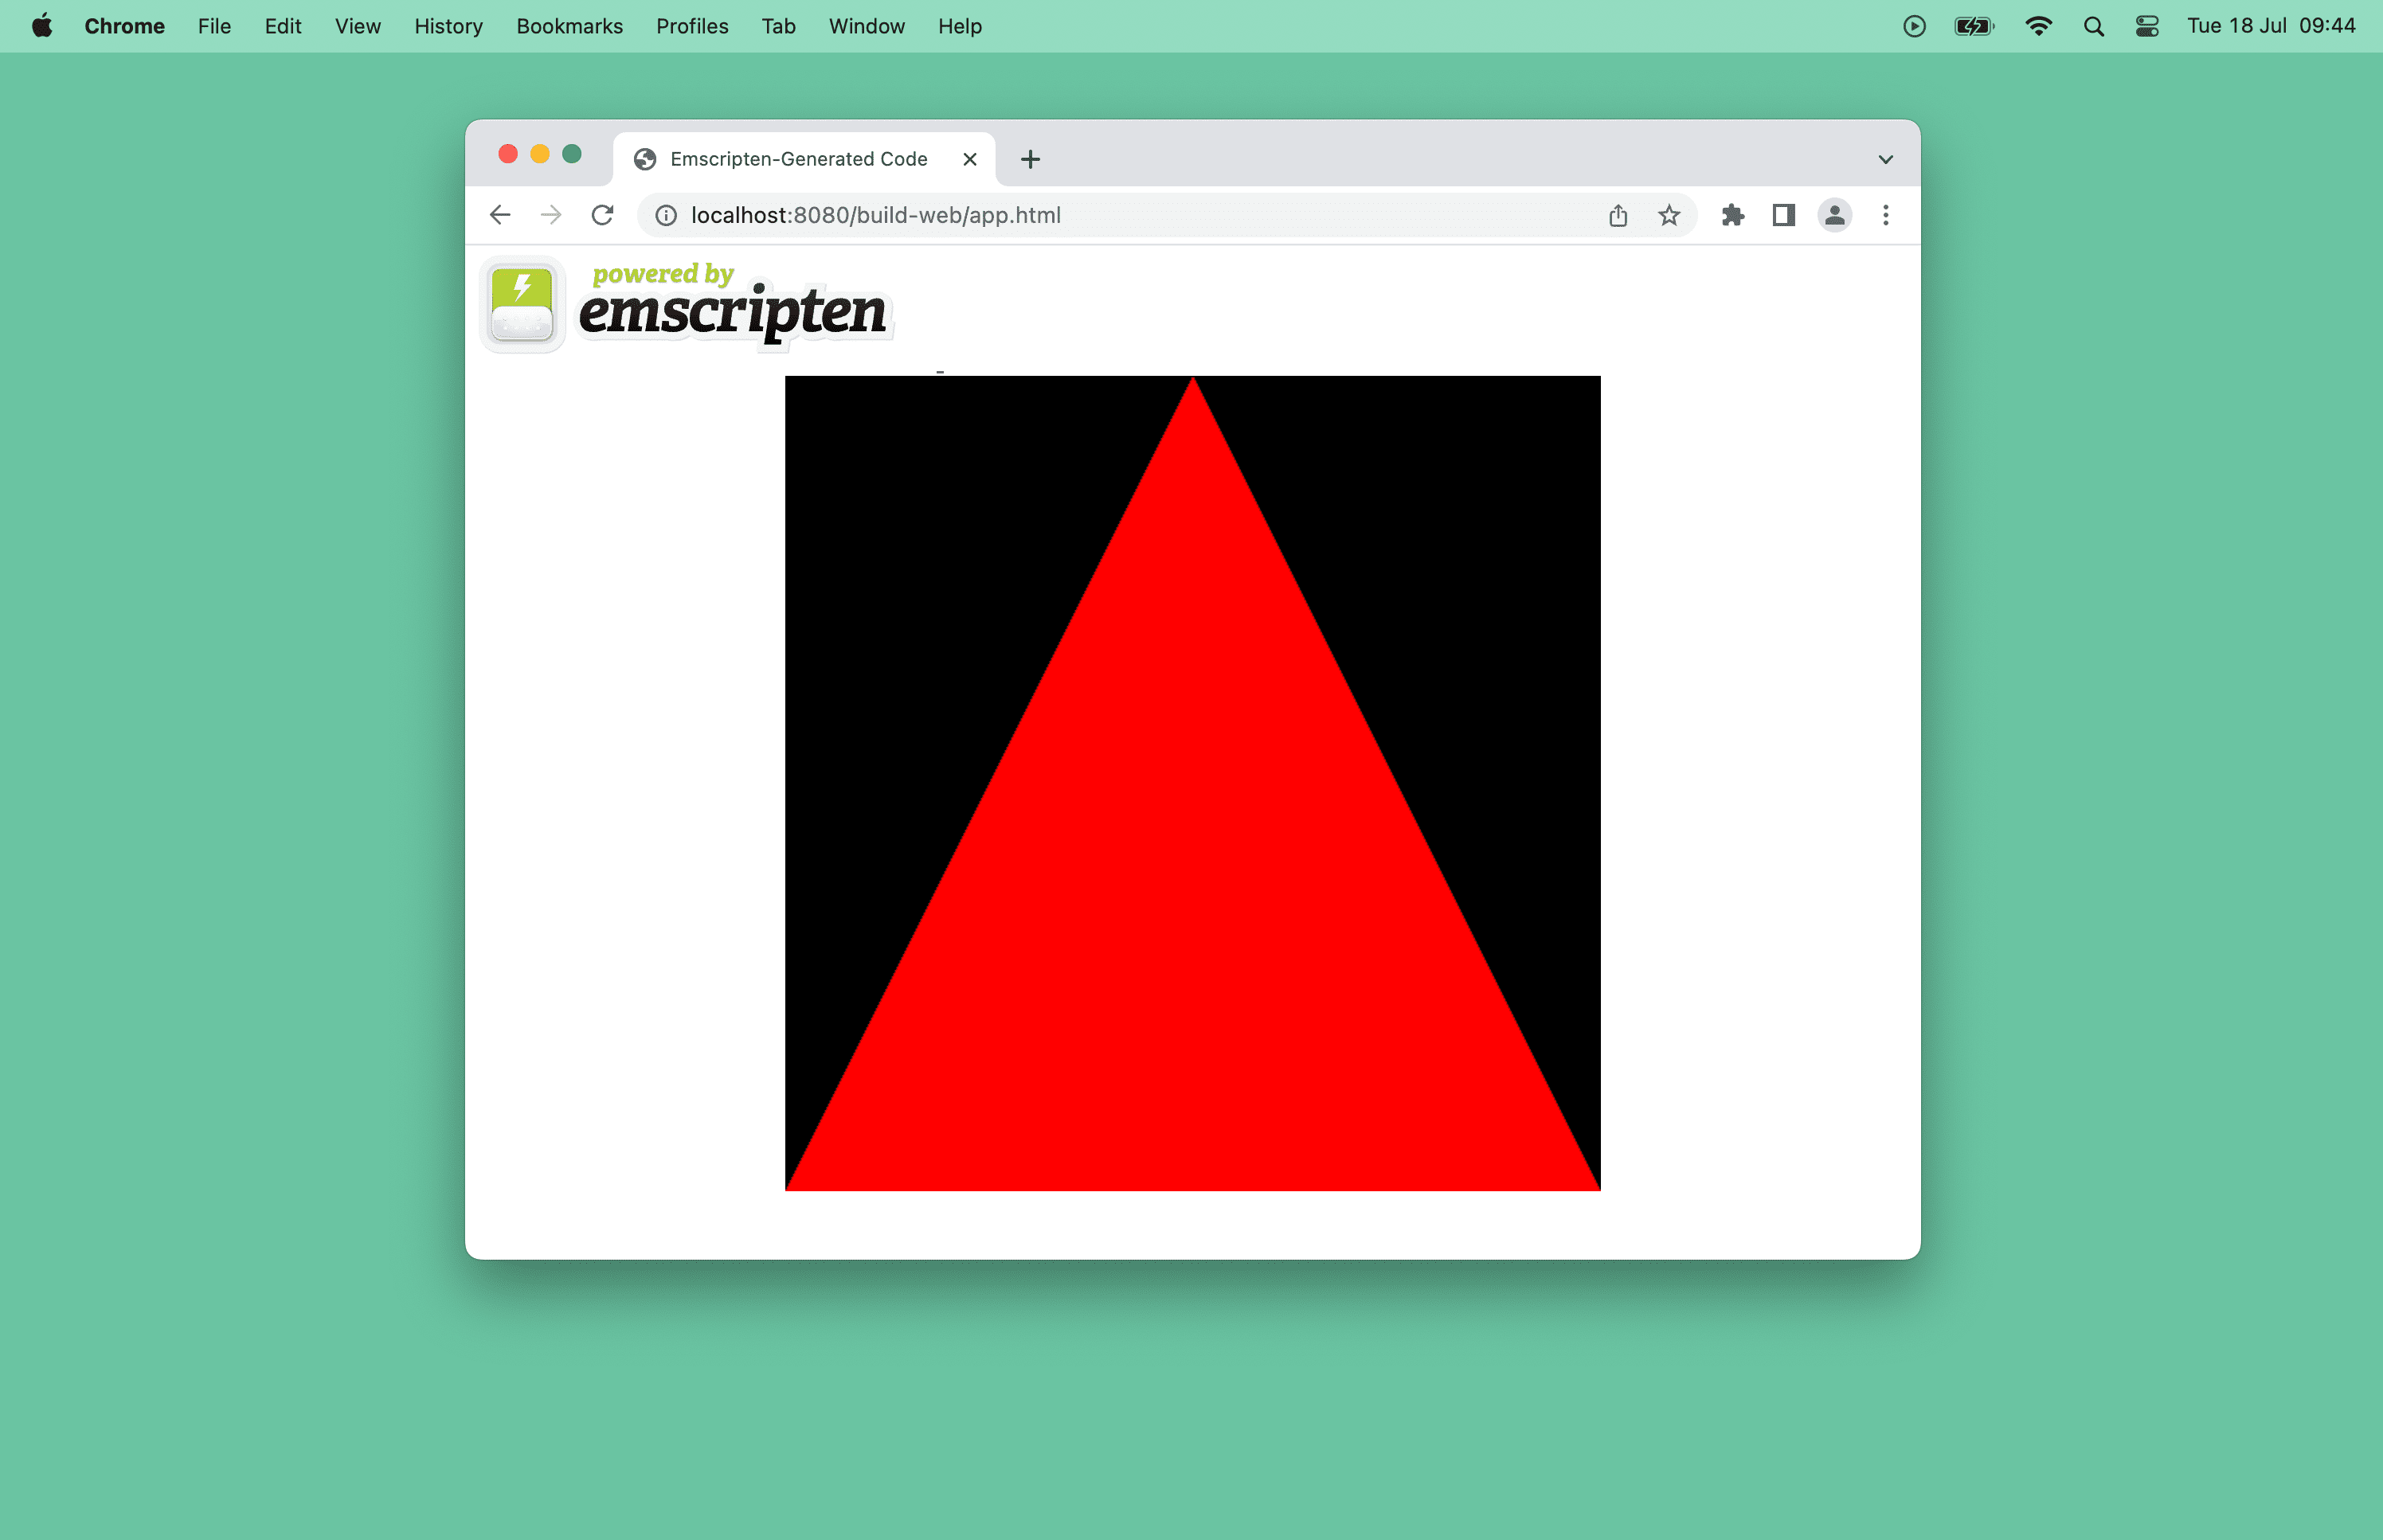 浏览器窗口中红色三角形的屏幕截图。